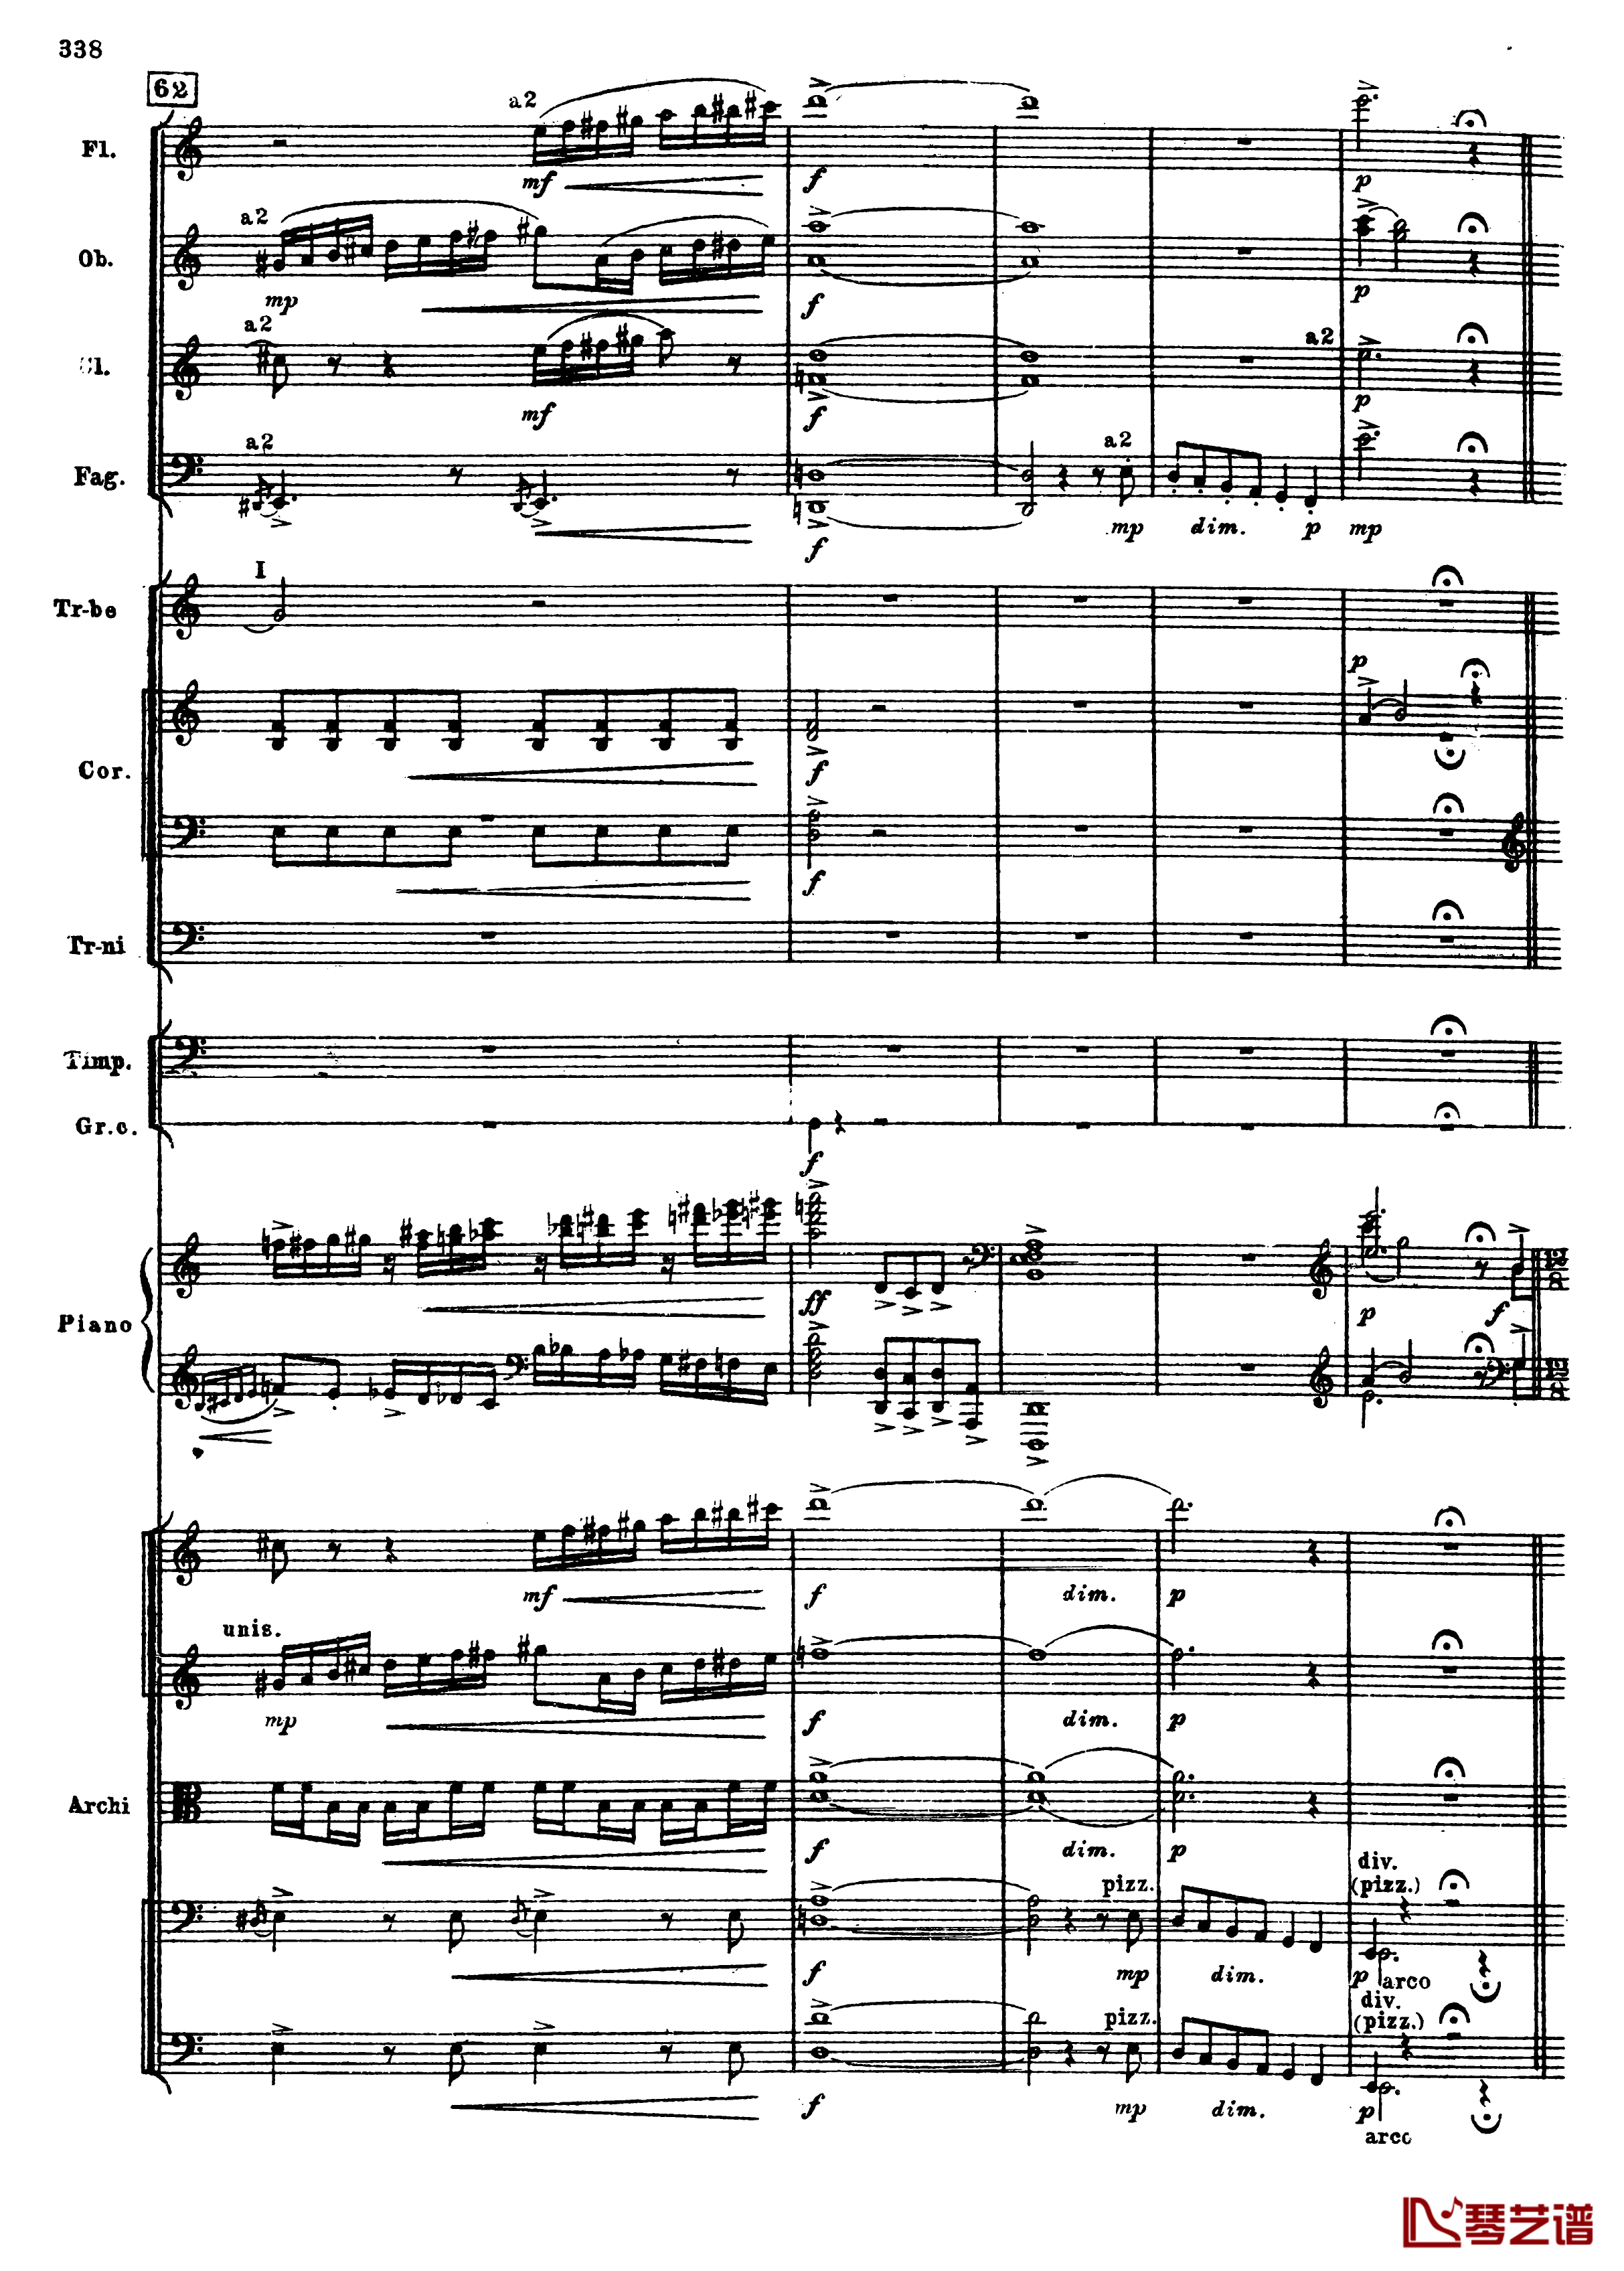 普罗科菲耶夫第三钢琴协奏曲钢琴谱-总谱-普罗科非耶夫70